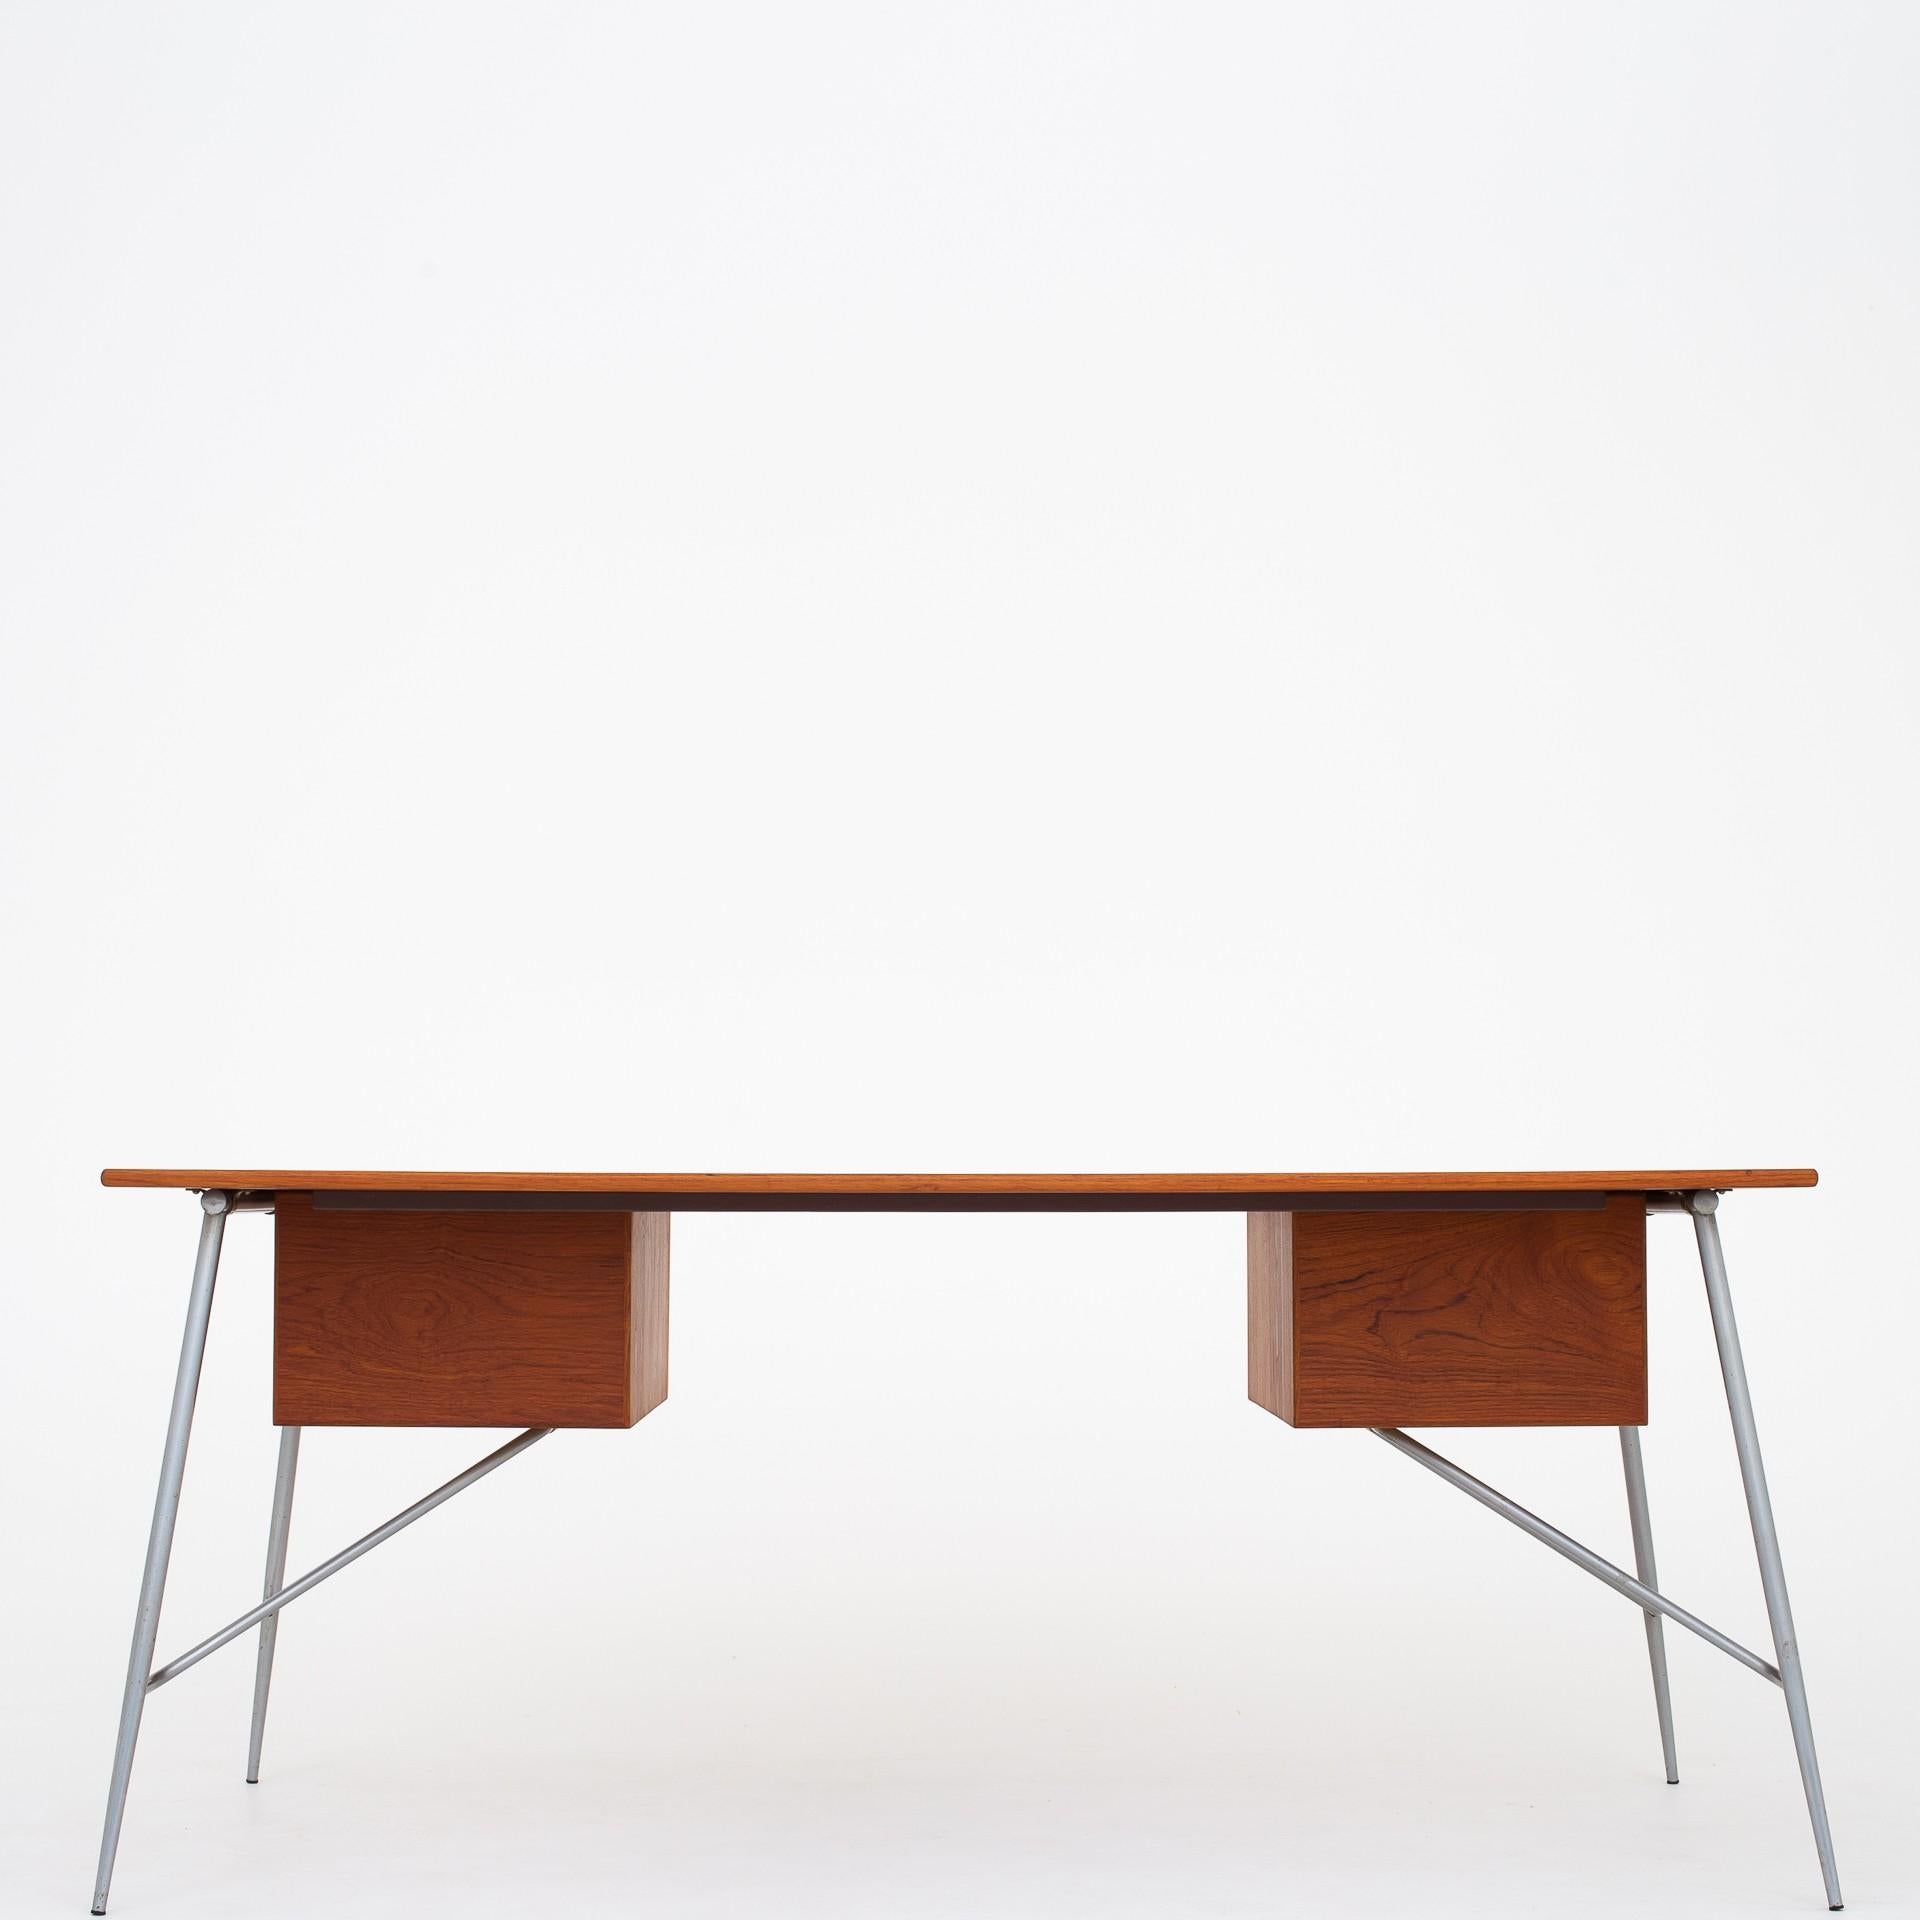 SM 202, desk in teak on steel frame with four drawers. Designed in 1953. Maker Søborg Møbler.